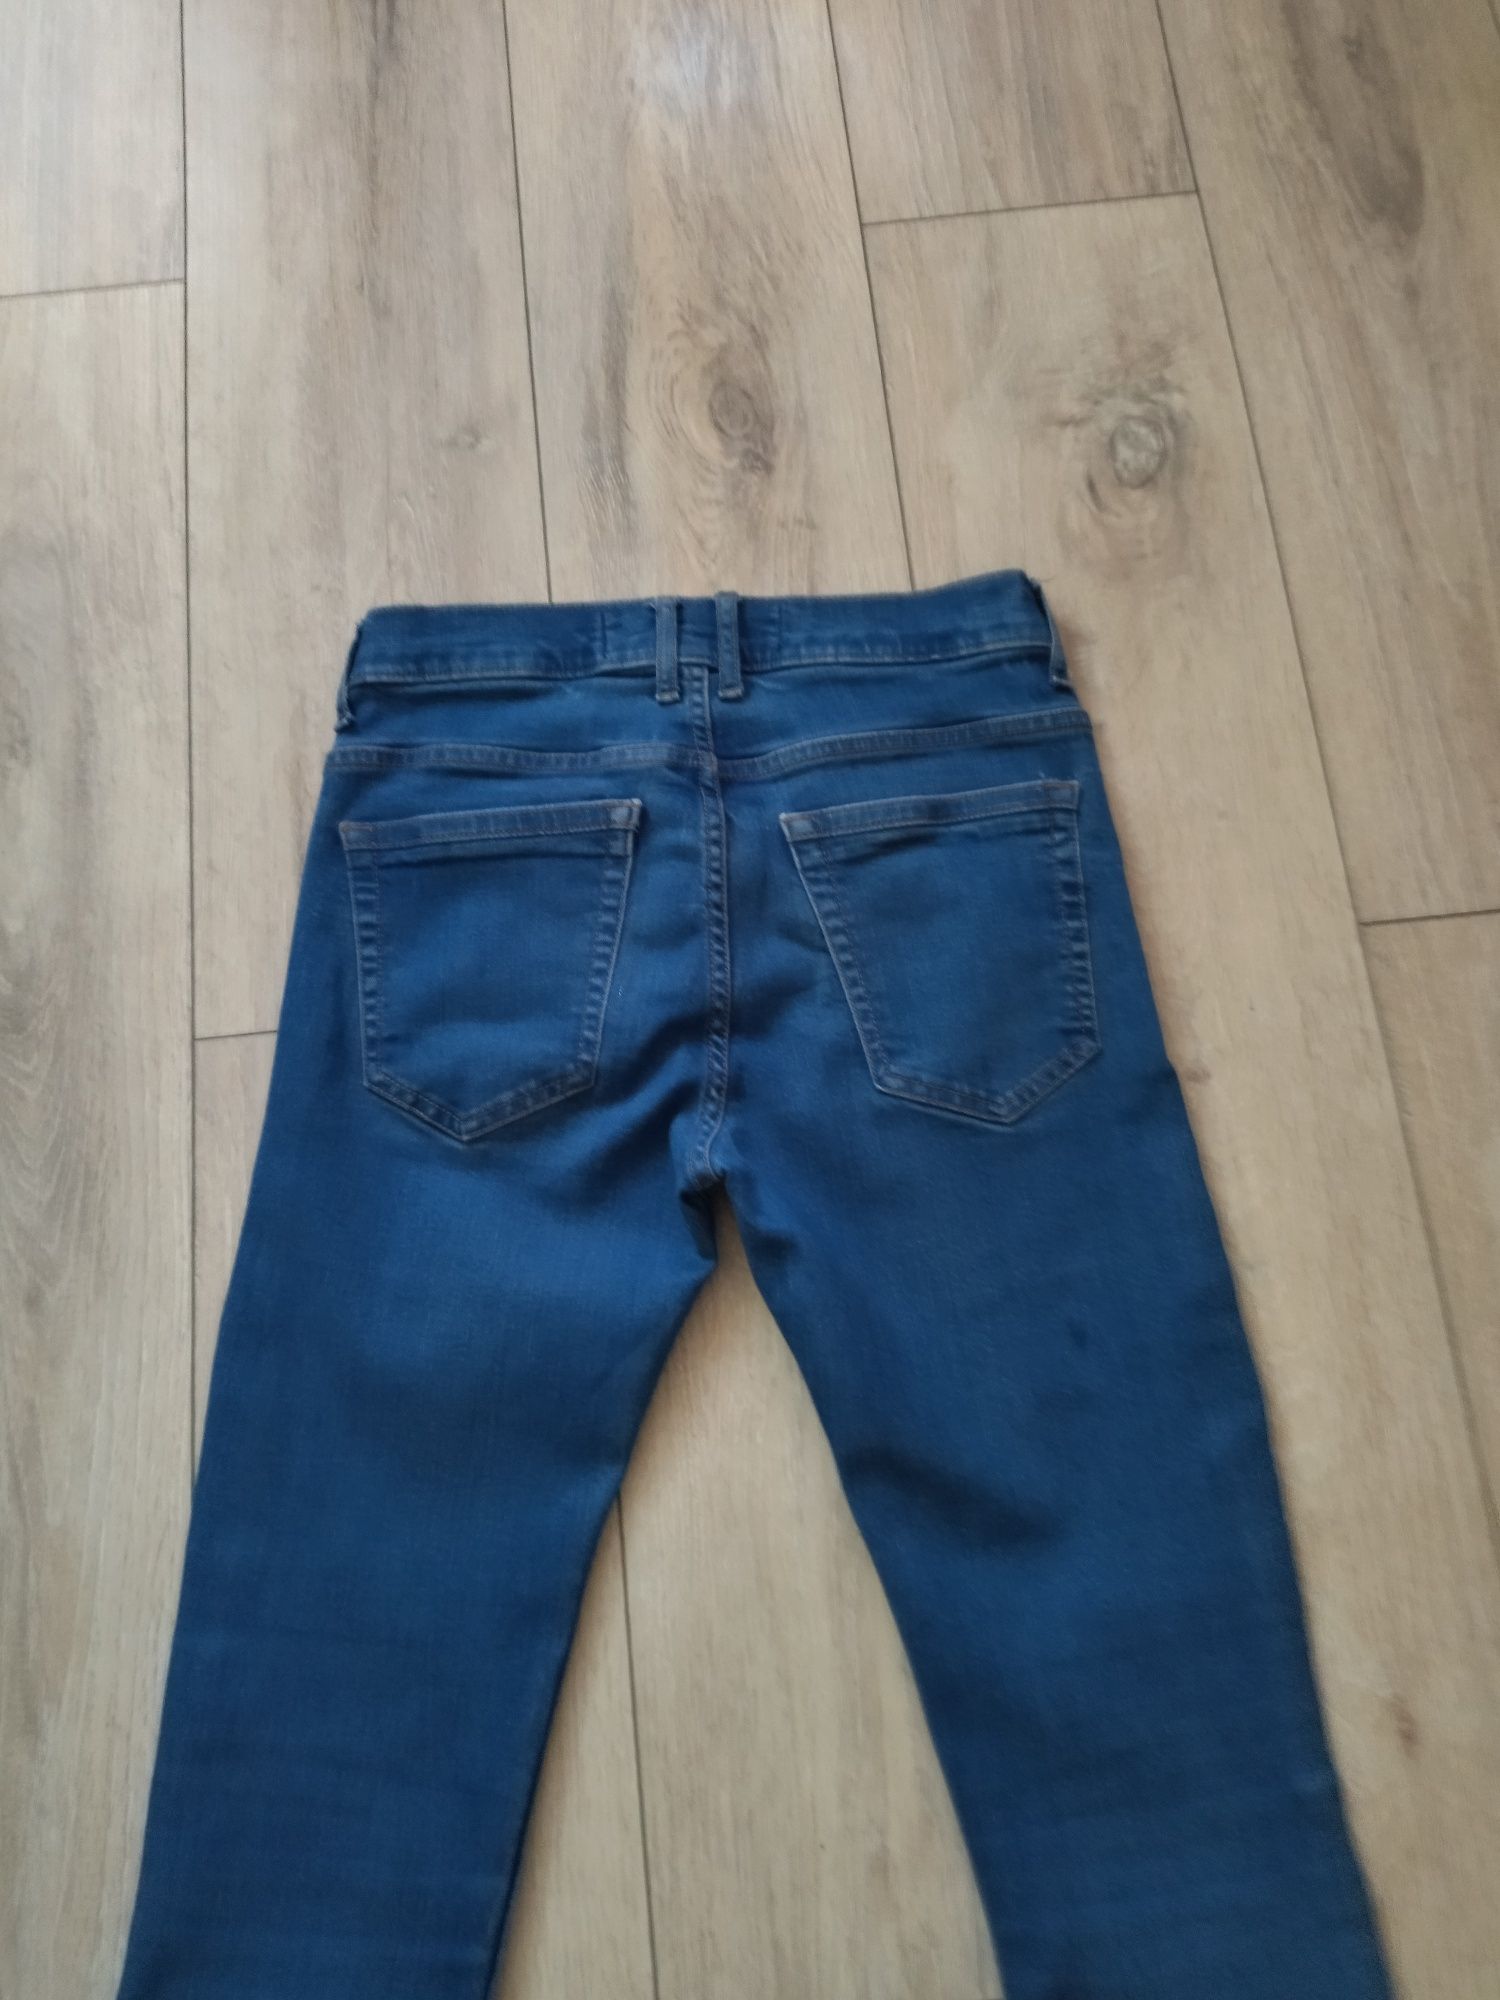 Spodnie jeans damskie roz 38- jak NOWE- firmowe